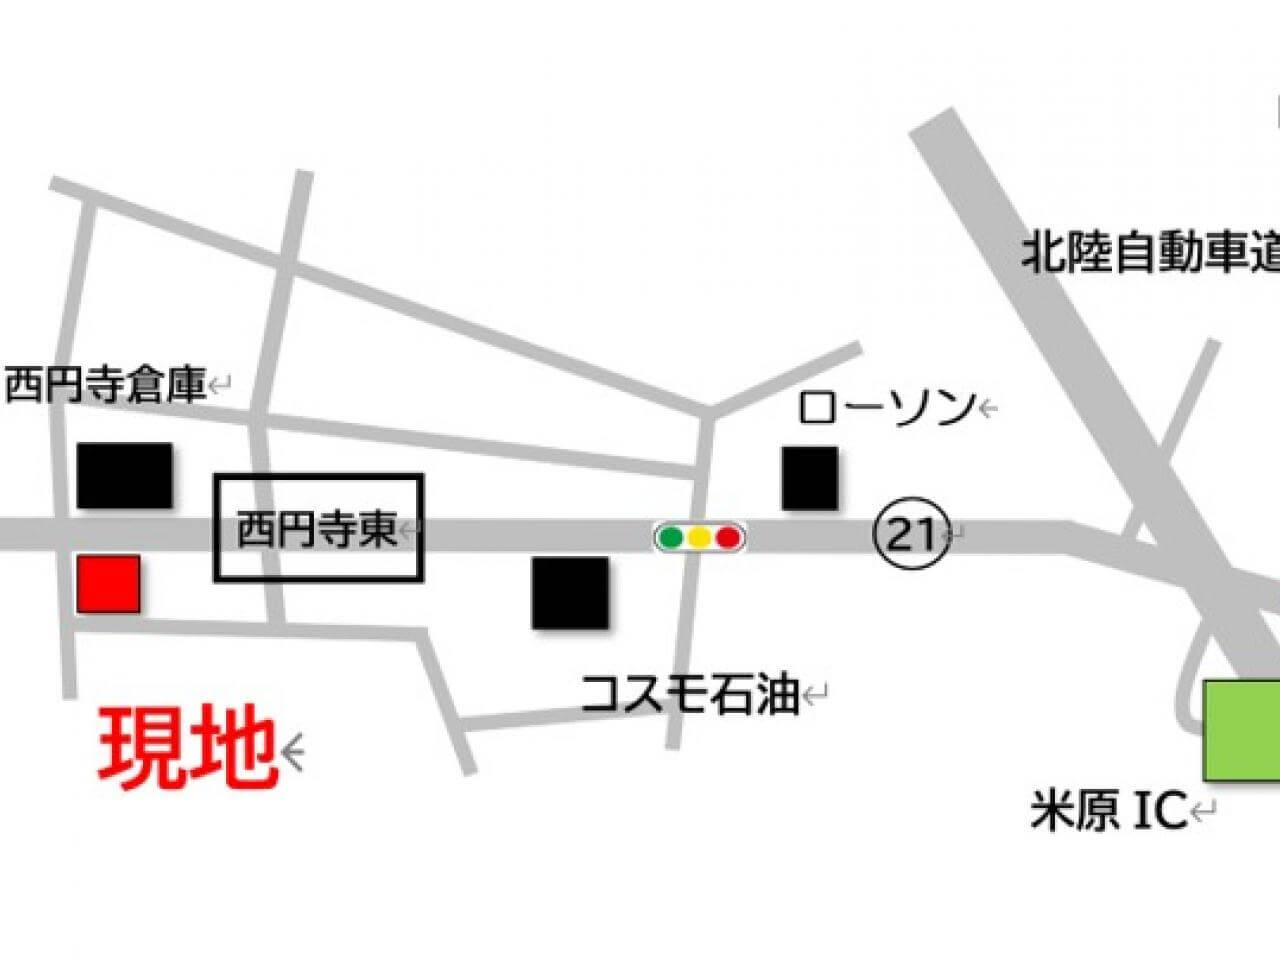 28日(土)に米原の賃貸ガレージハウス『Y’sGARAGE 西円寺』で1日限定内覧会を実施します。